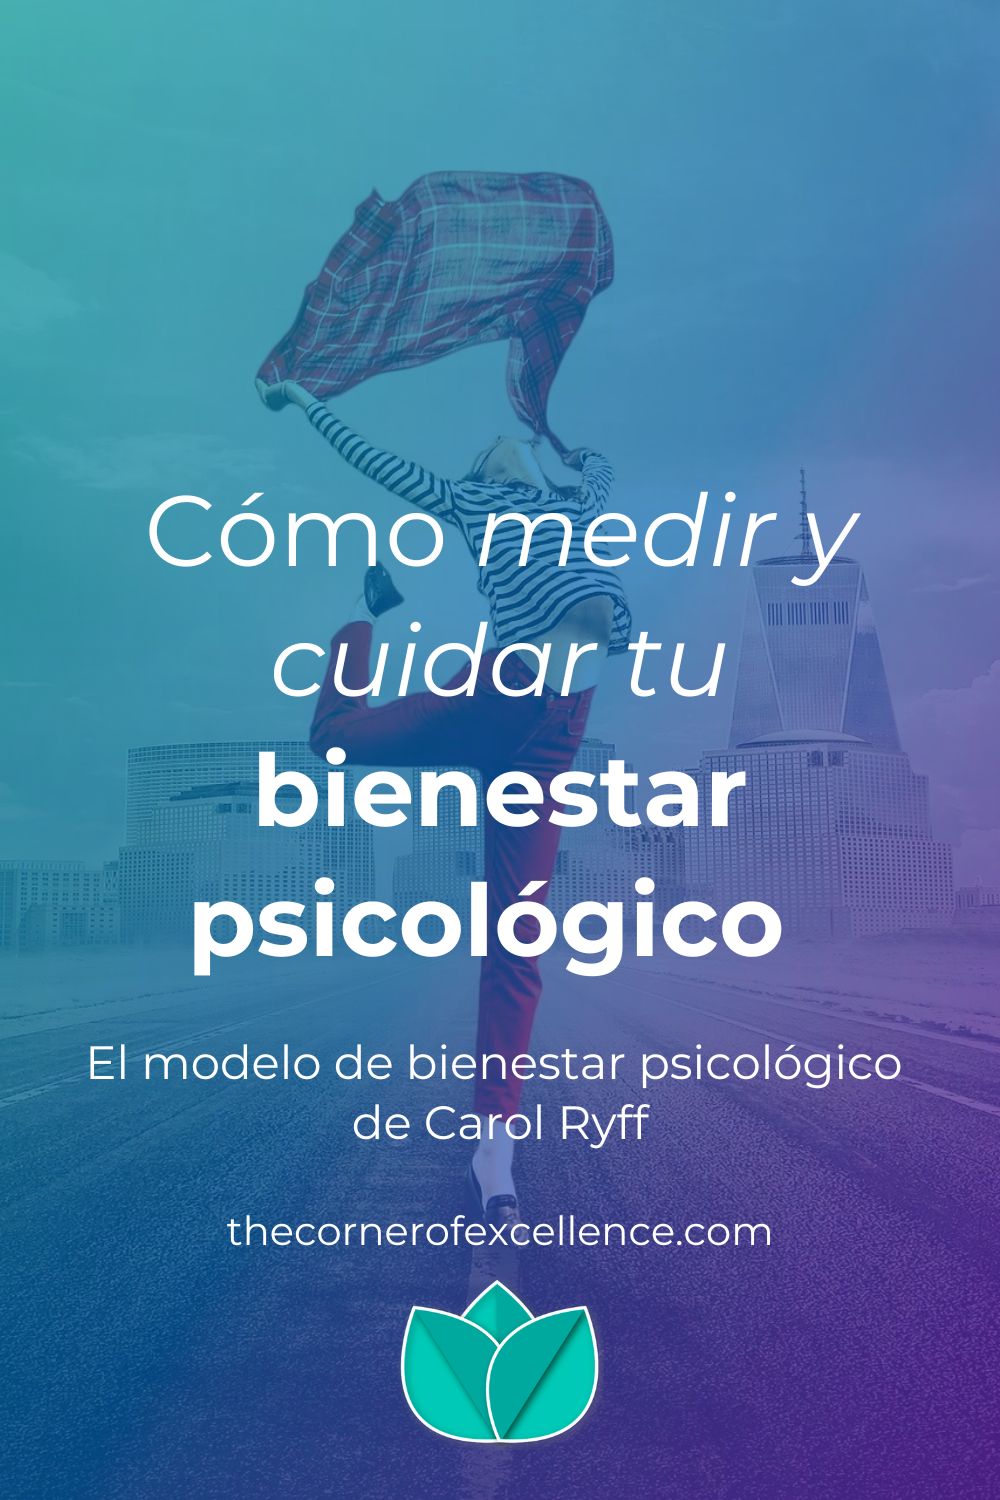 modelo de bienestar psicológico de Carol Ryff mujer salto libertad